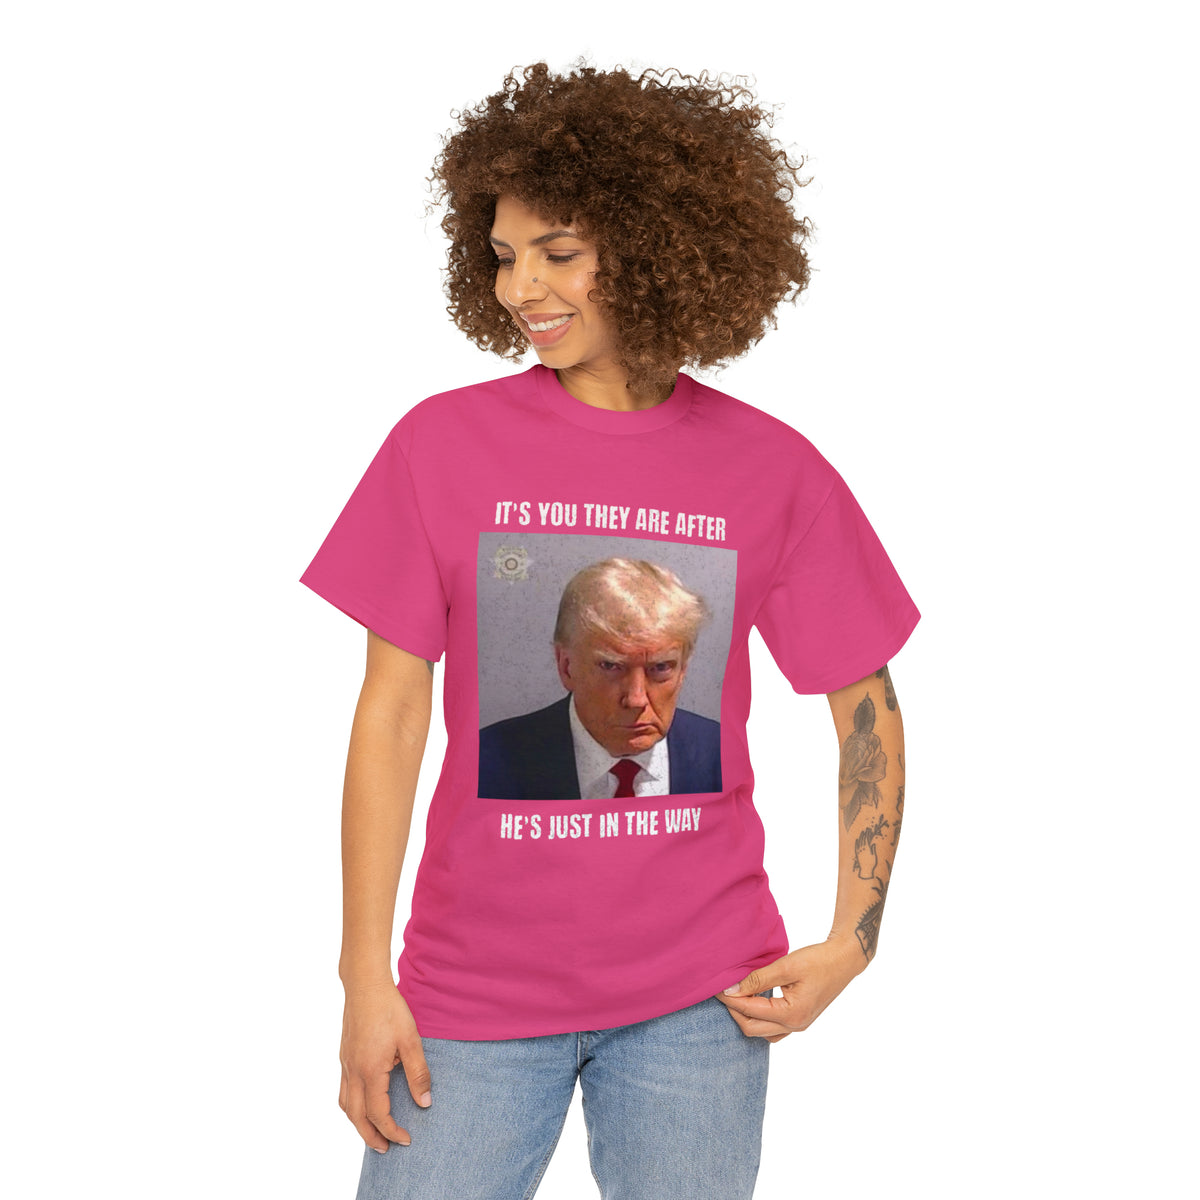 Trump Mug Shot T-Shirt